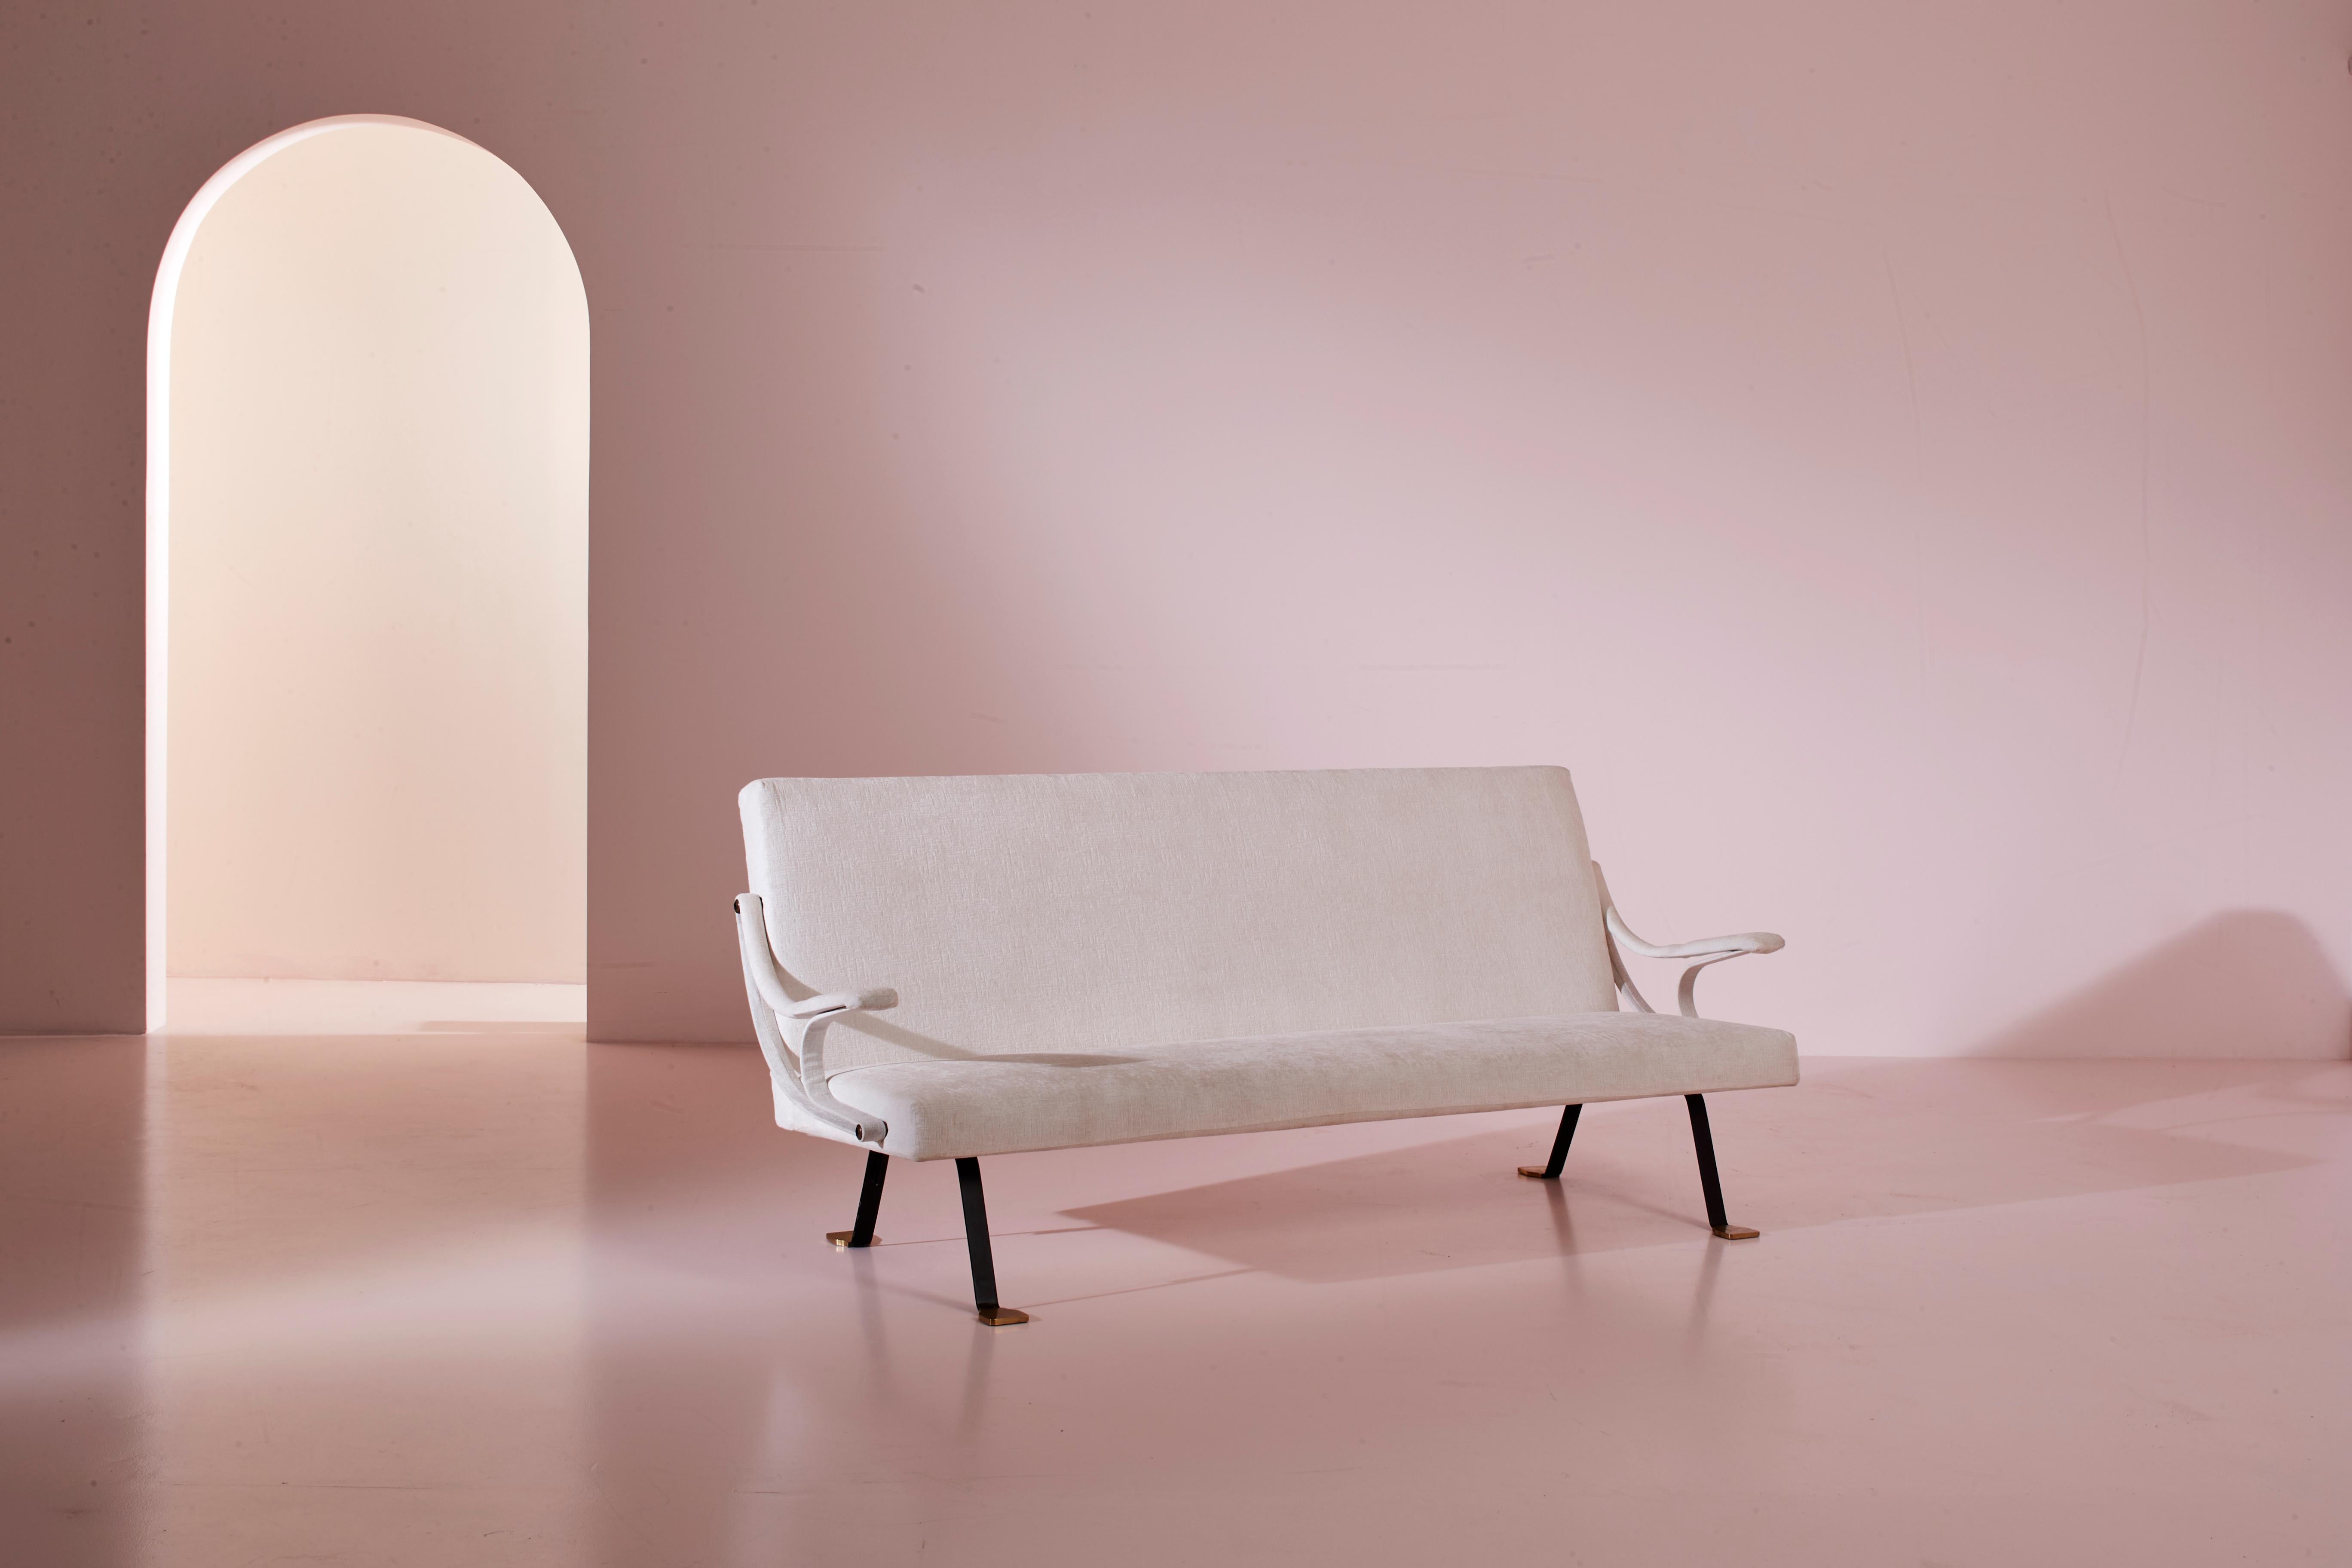 Dreisitziges Sofa aus weißem Samt mit Metall und Messing, Modell Digamma, entworfen von Ignazio Gardella für Gavina im Jahr 1957.

Die außergewöhnliche Eleganz des dreisitzigen Sofas Digamma, das 1957 von Ignazio Gardella für Gavina entworfen wurde,